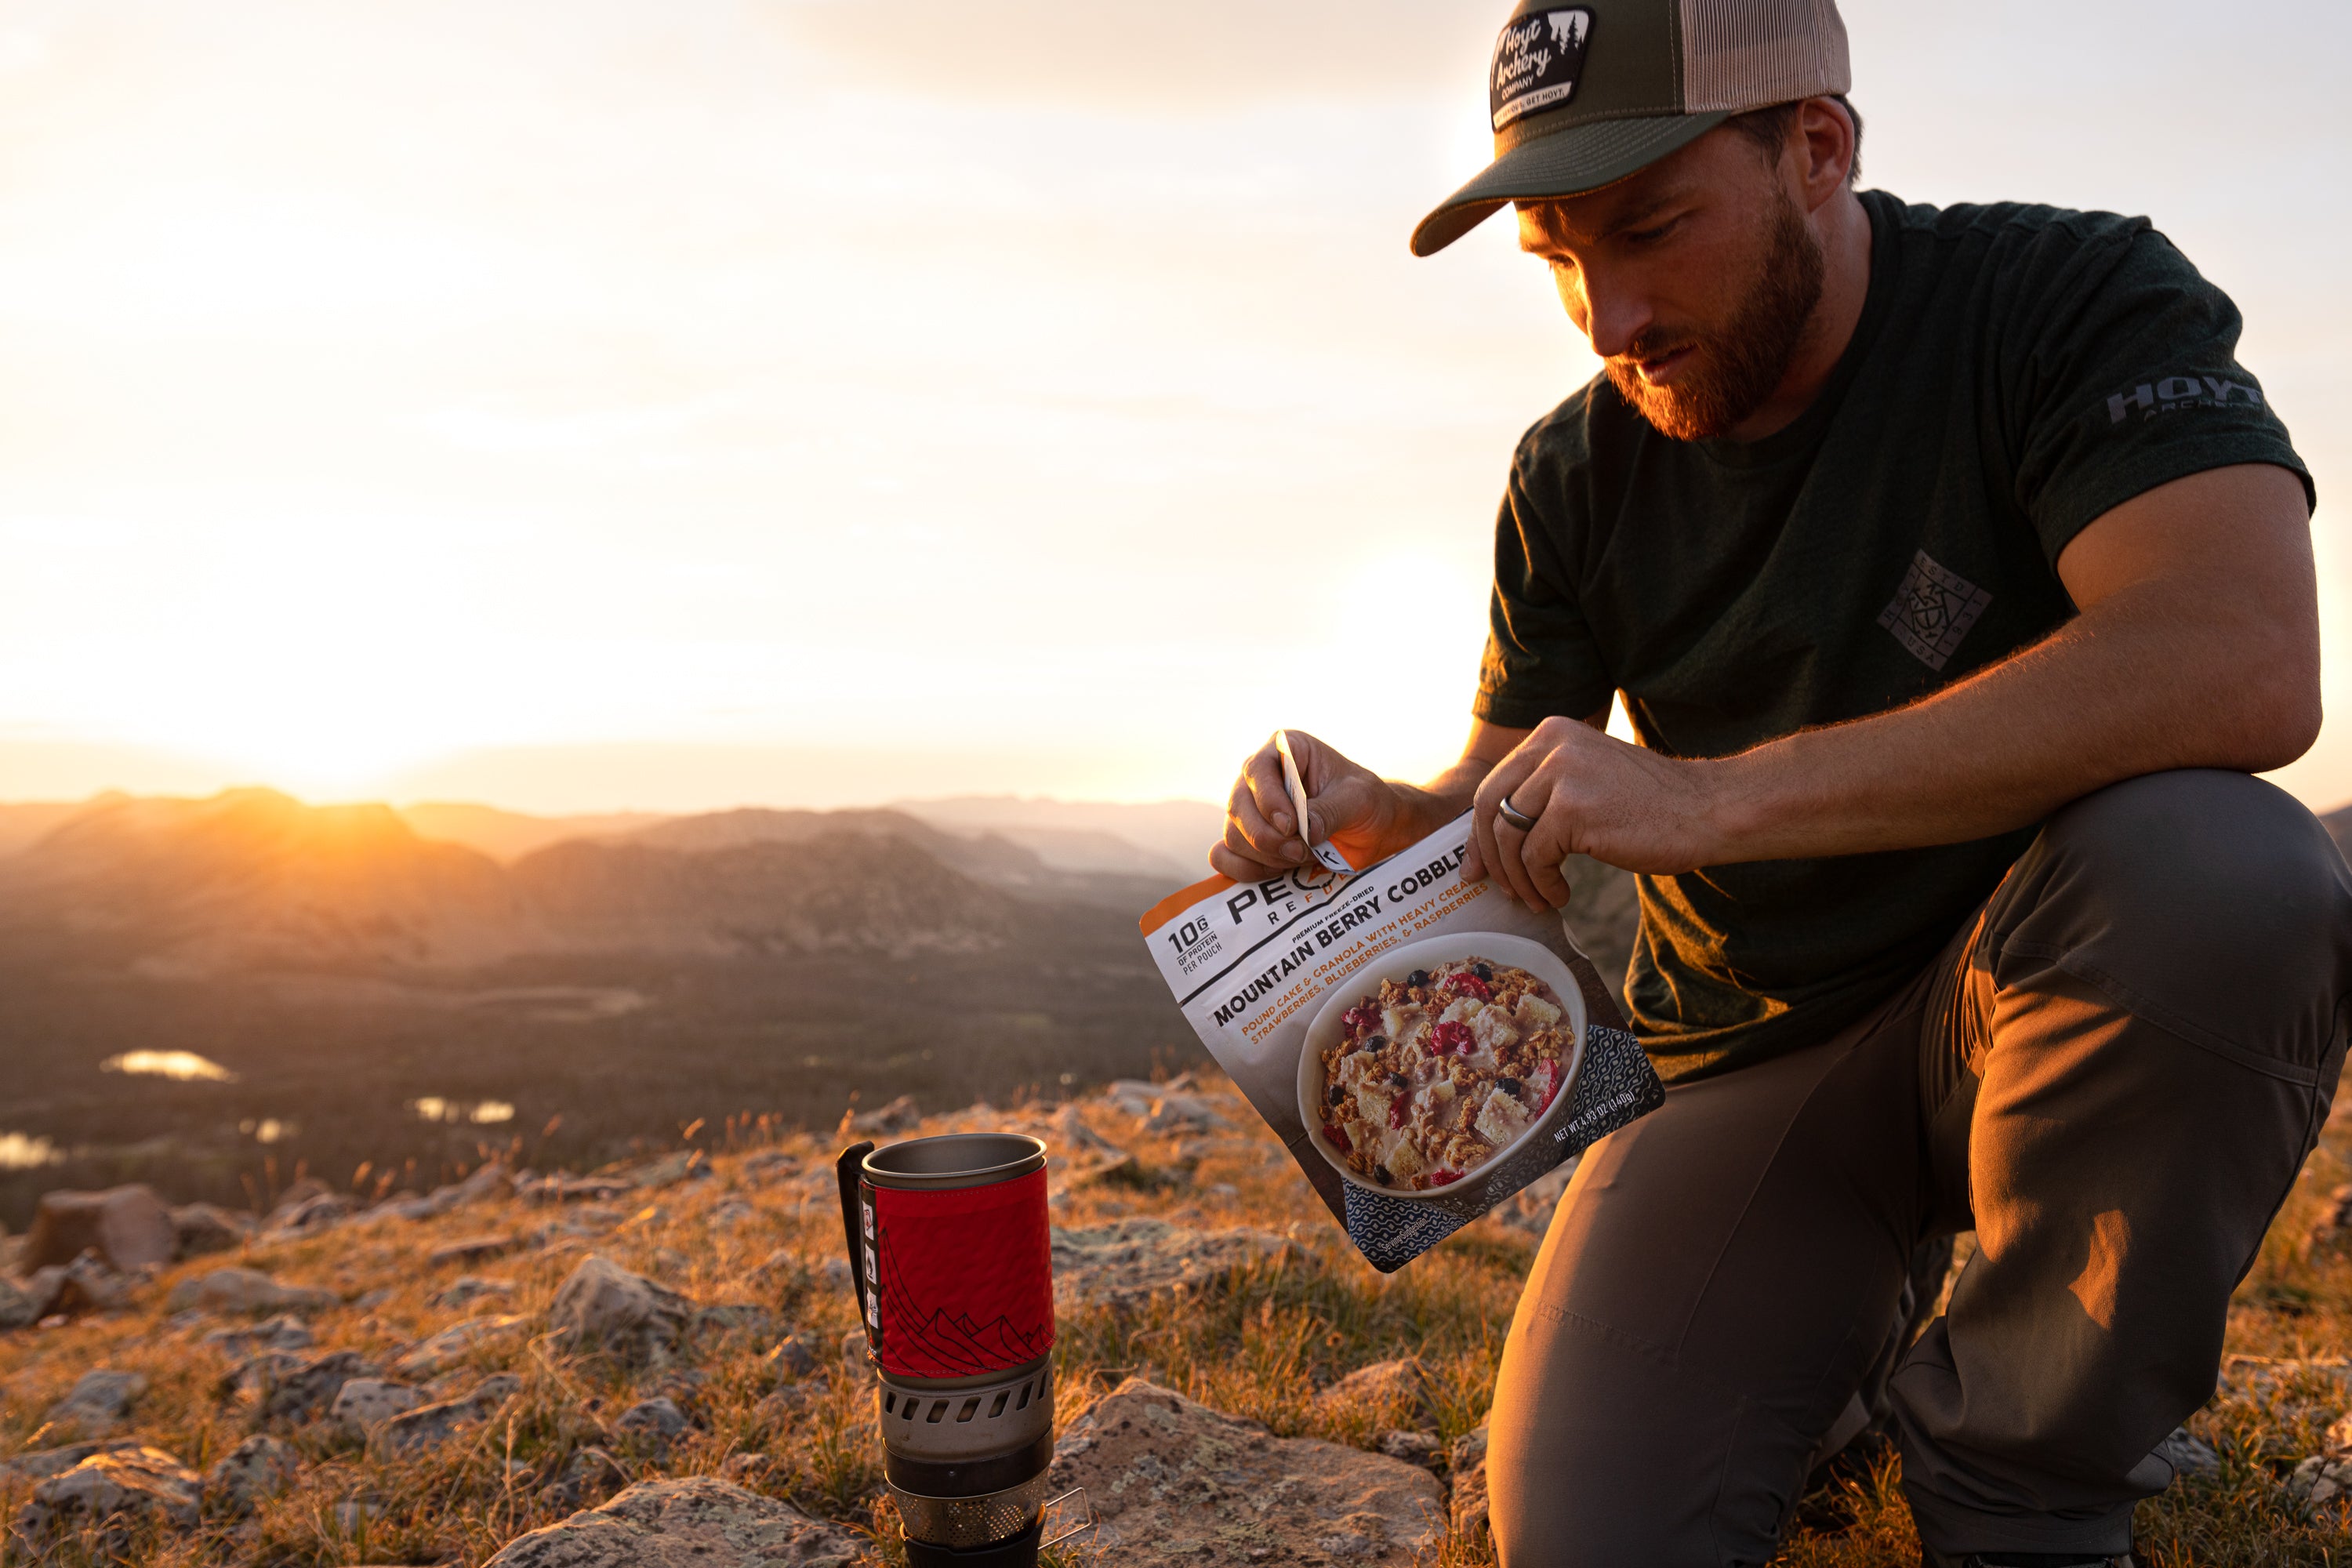 A man kneeling on a rocky hill enjoy a package of Mountain Berry Cobbler dessert.